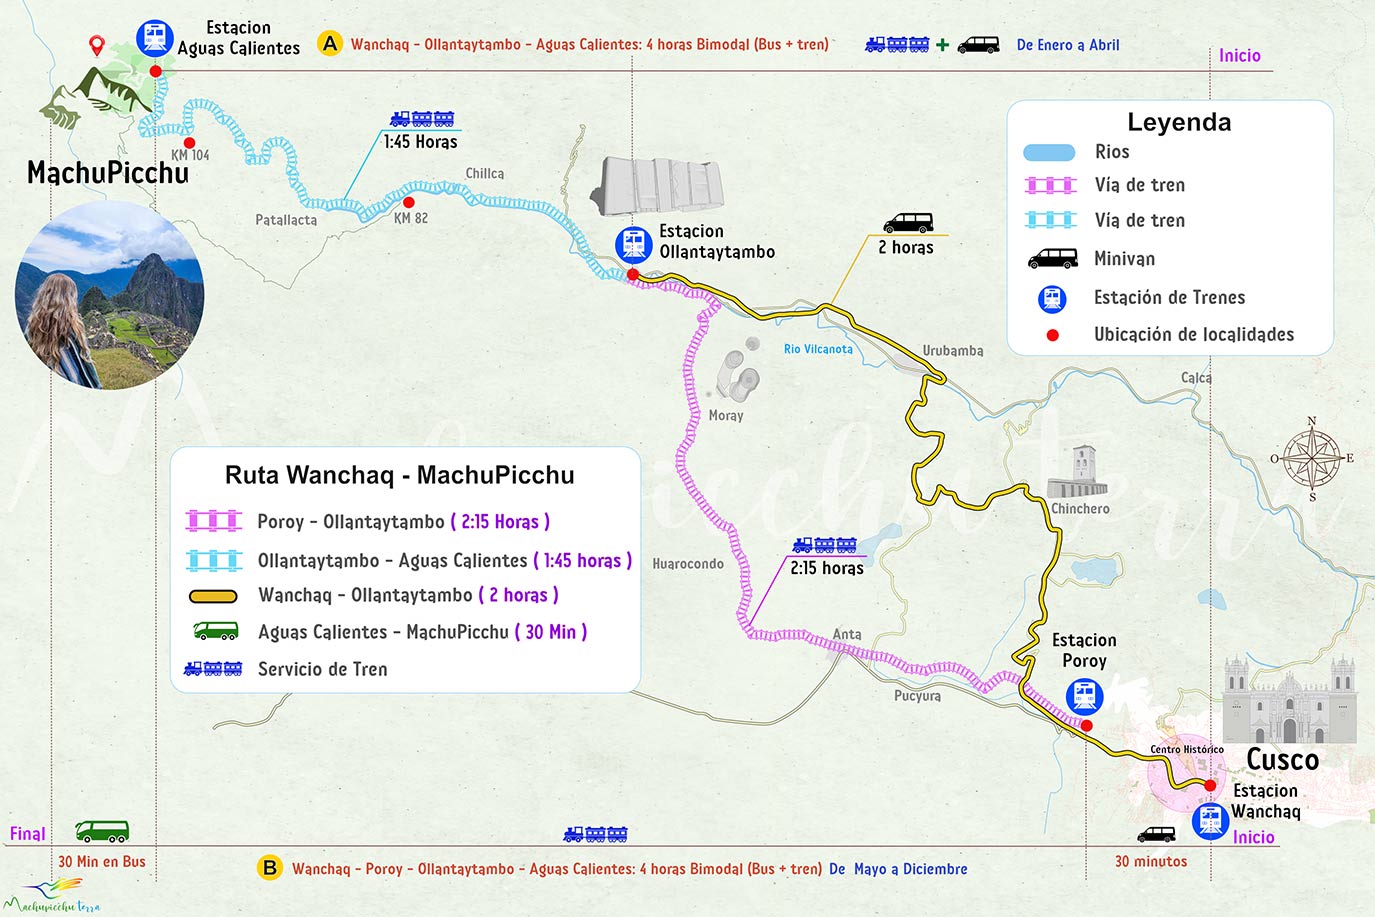 Mapa wanchaq cusco Machupicchu